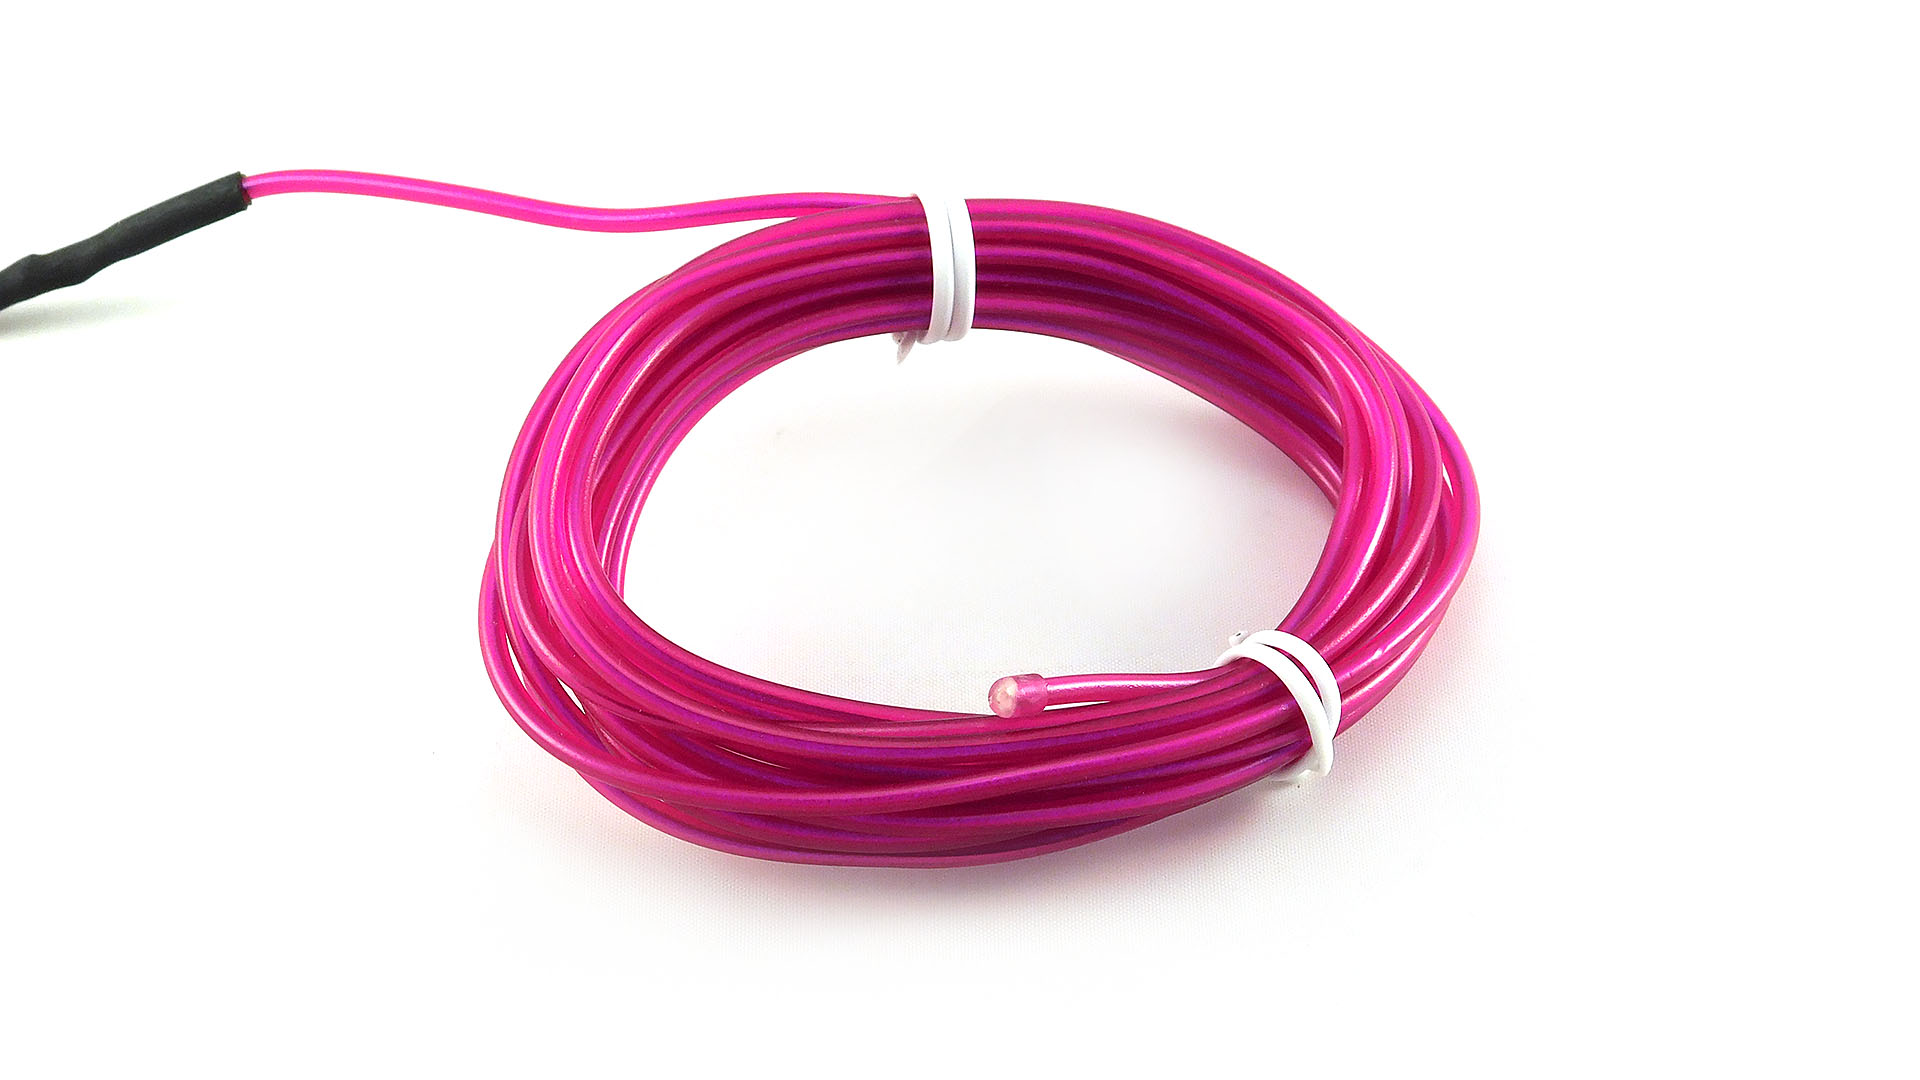 Nettigo: ELWIRA Soft El Wire 2.3 mm x 3m, with connector, purple